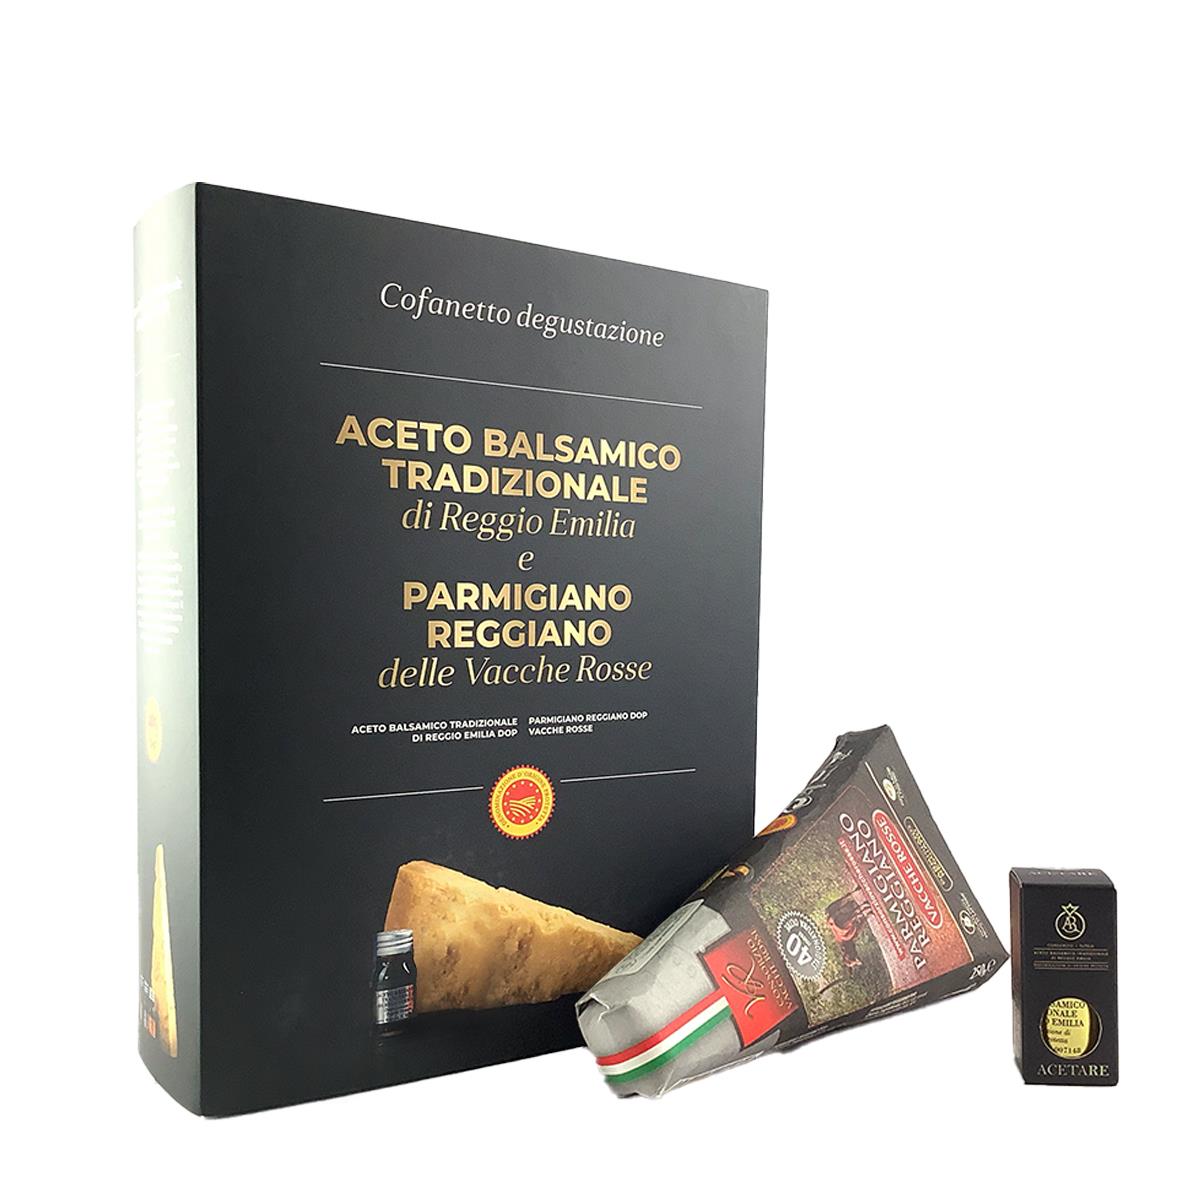 Caixa de Parmigiano Reggiano Vacche Rosse 40 Meses e Vinagre Balsâmico Reggio Emilia Gold Quality